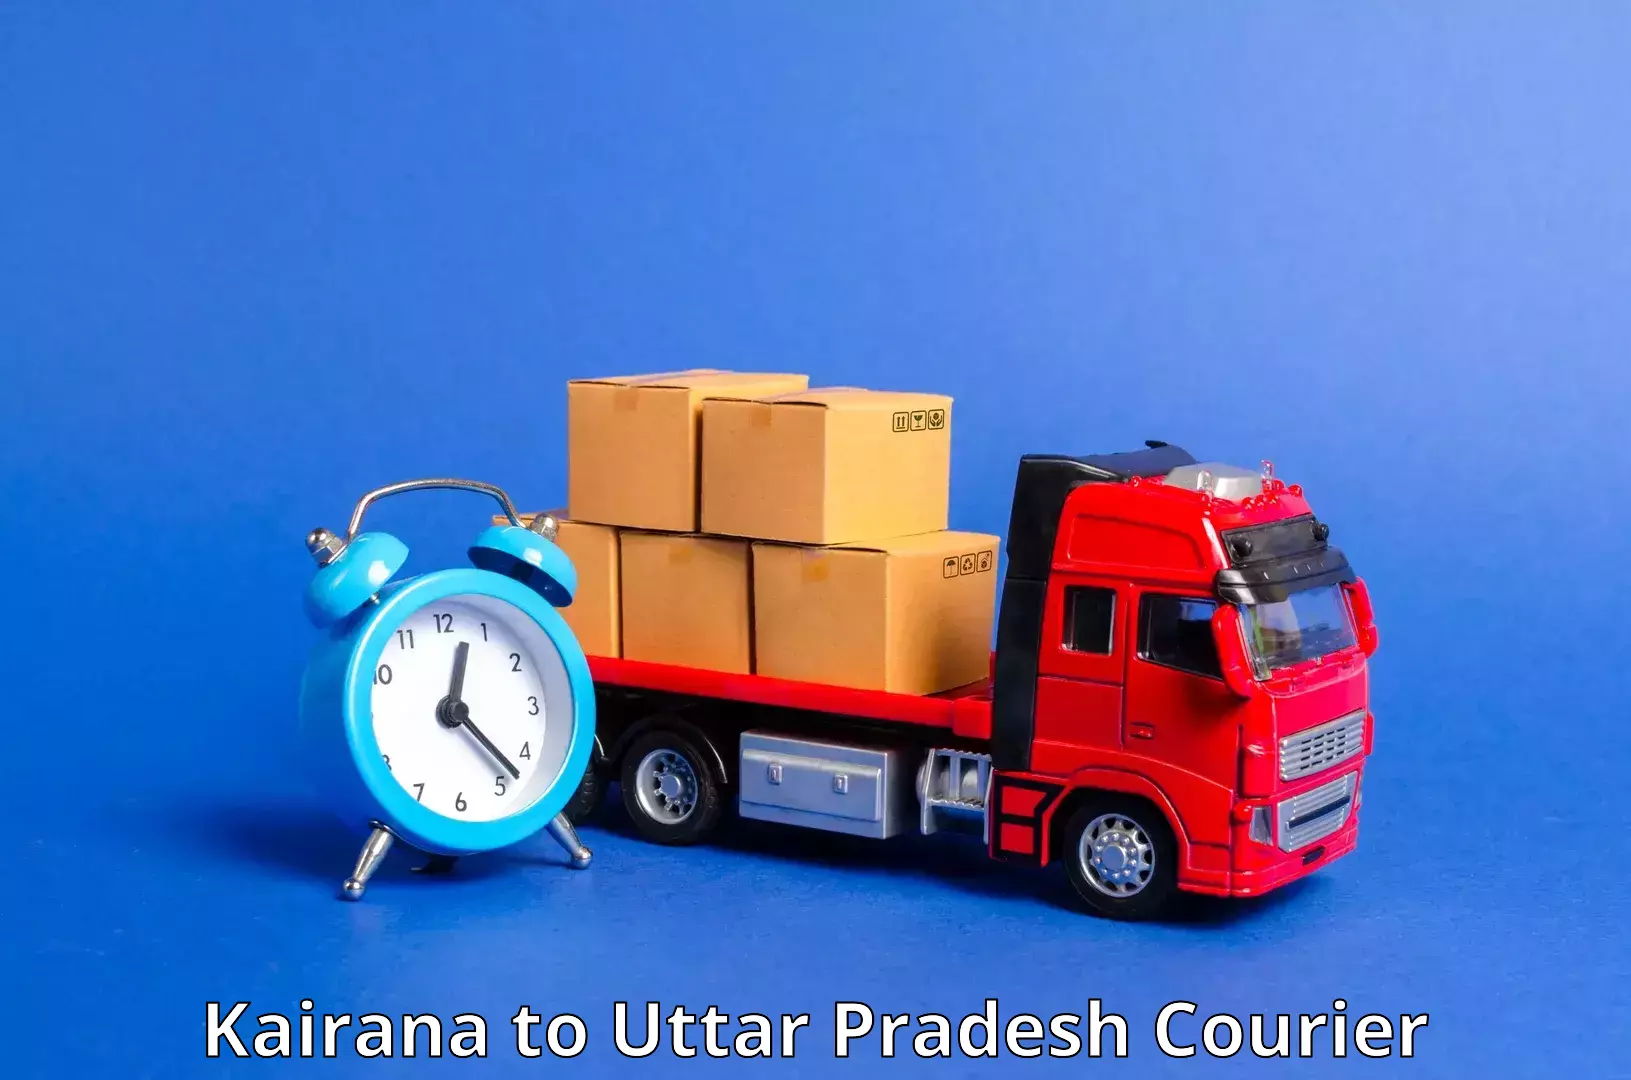 Scheduled delivery Kairana to Muzaffarnagar